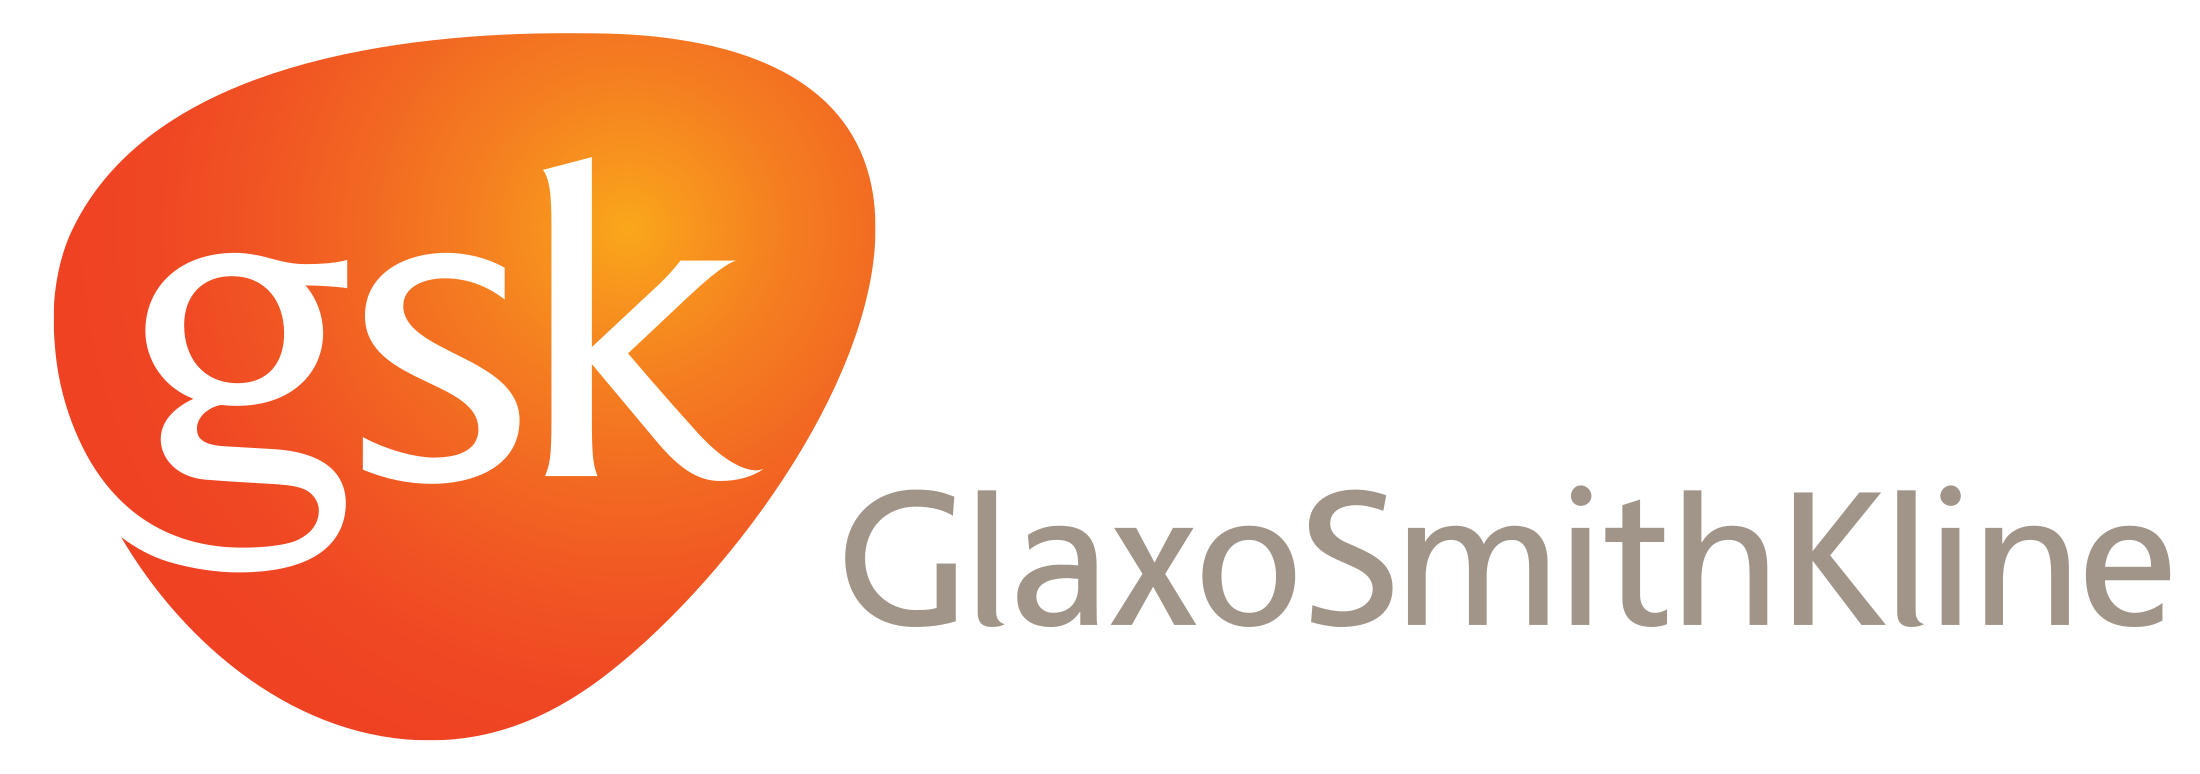 glaxosmithkline-logo.png